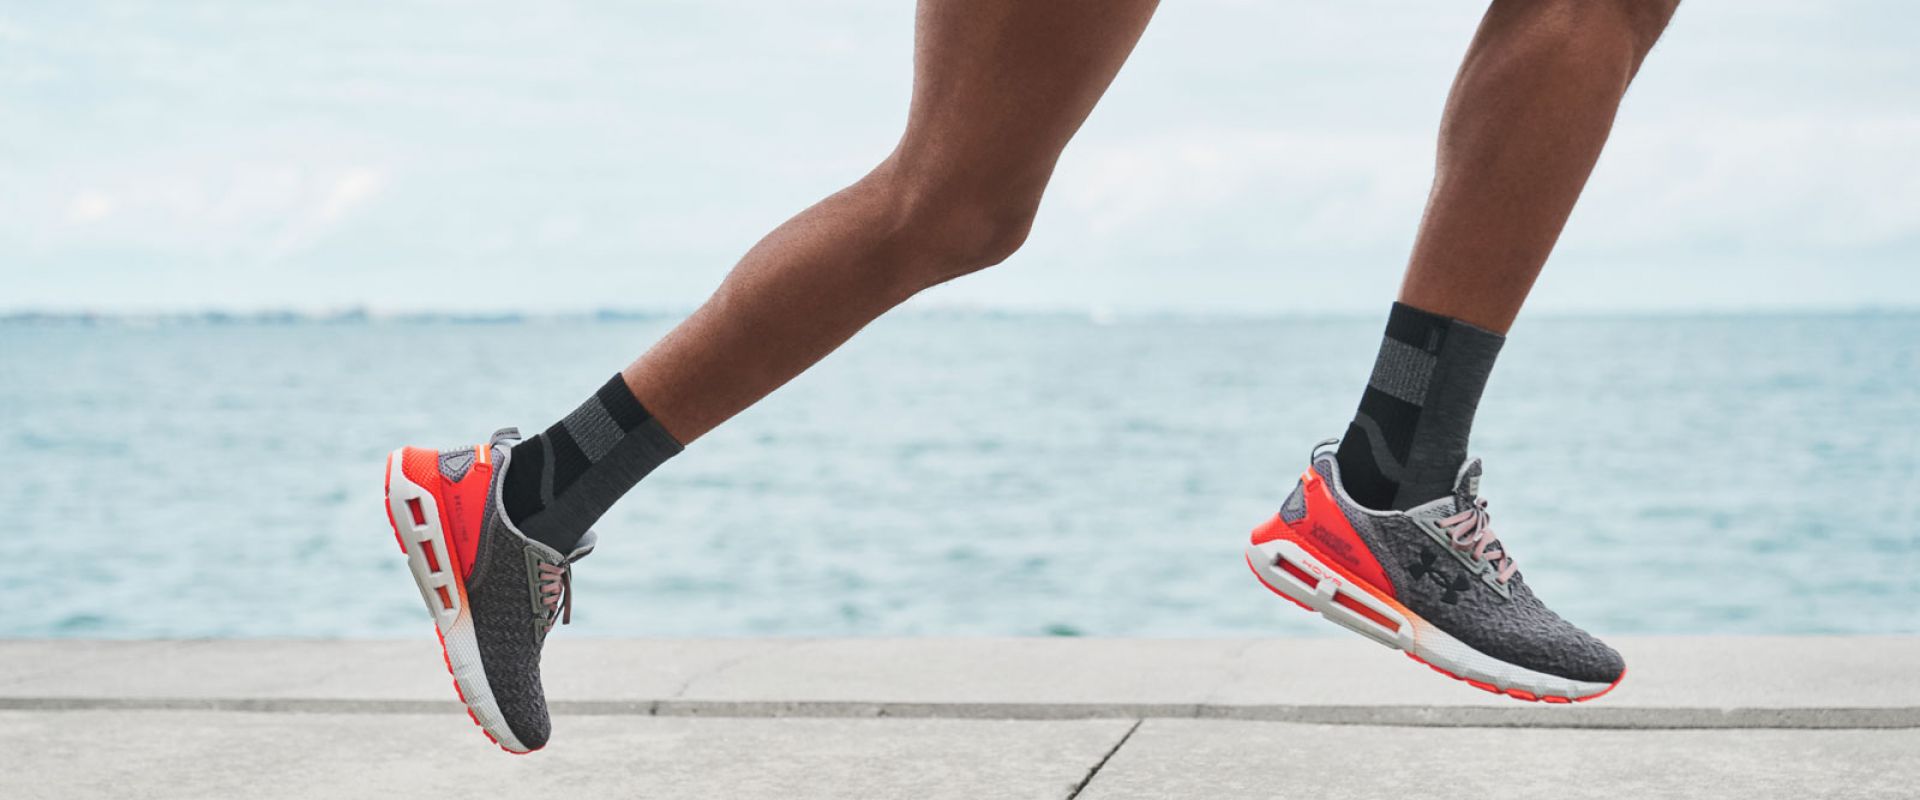 Kako izbrati pravilno tekaško obutev?